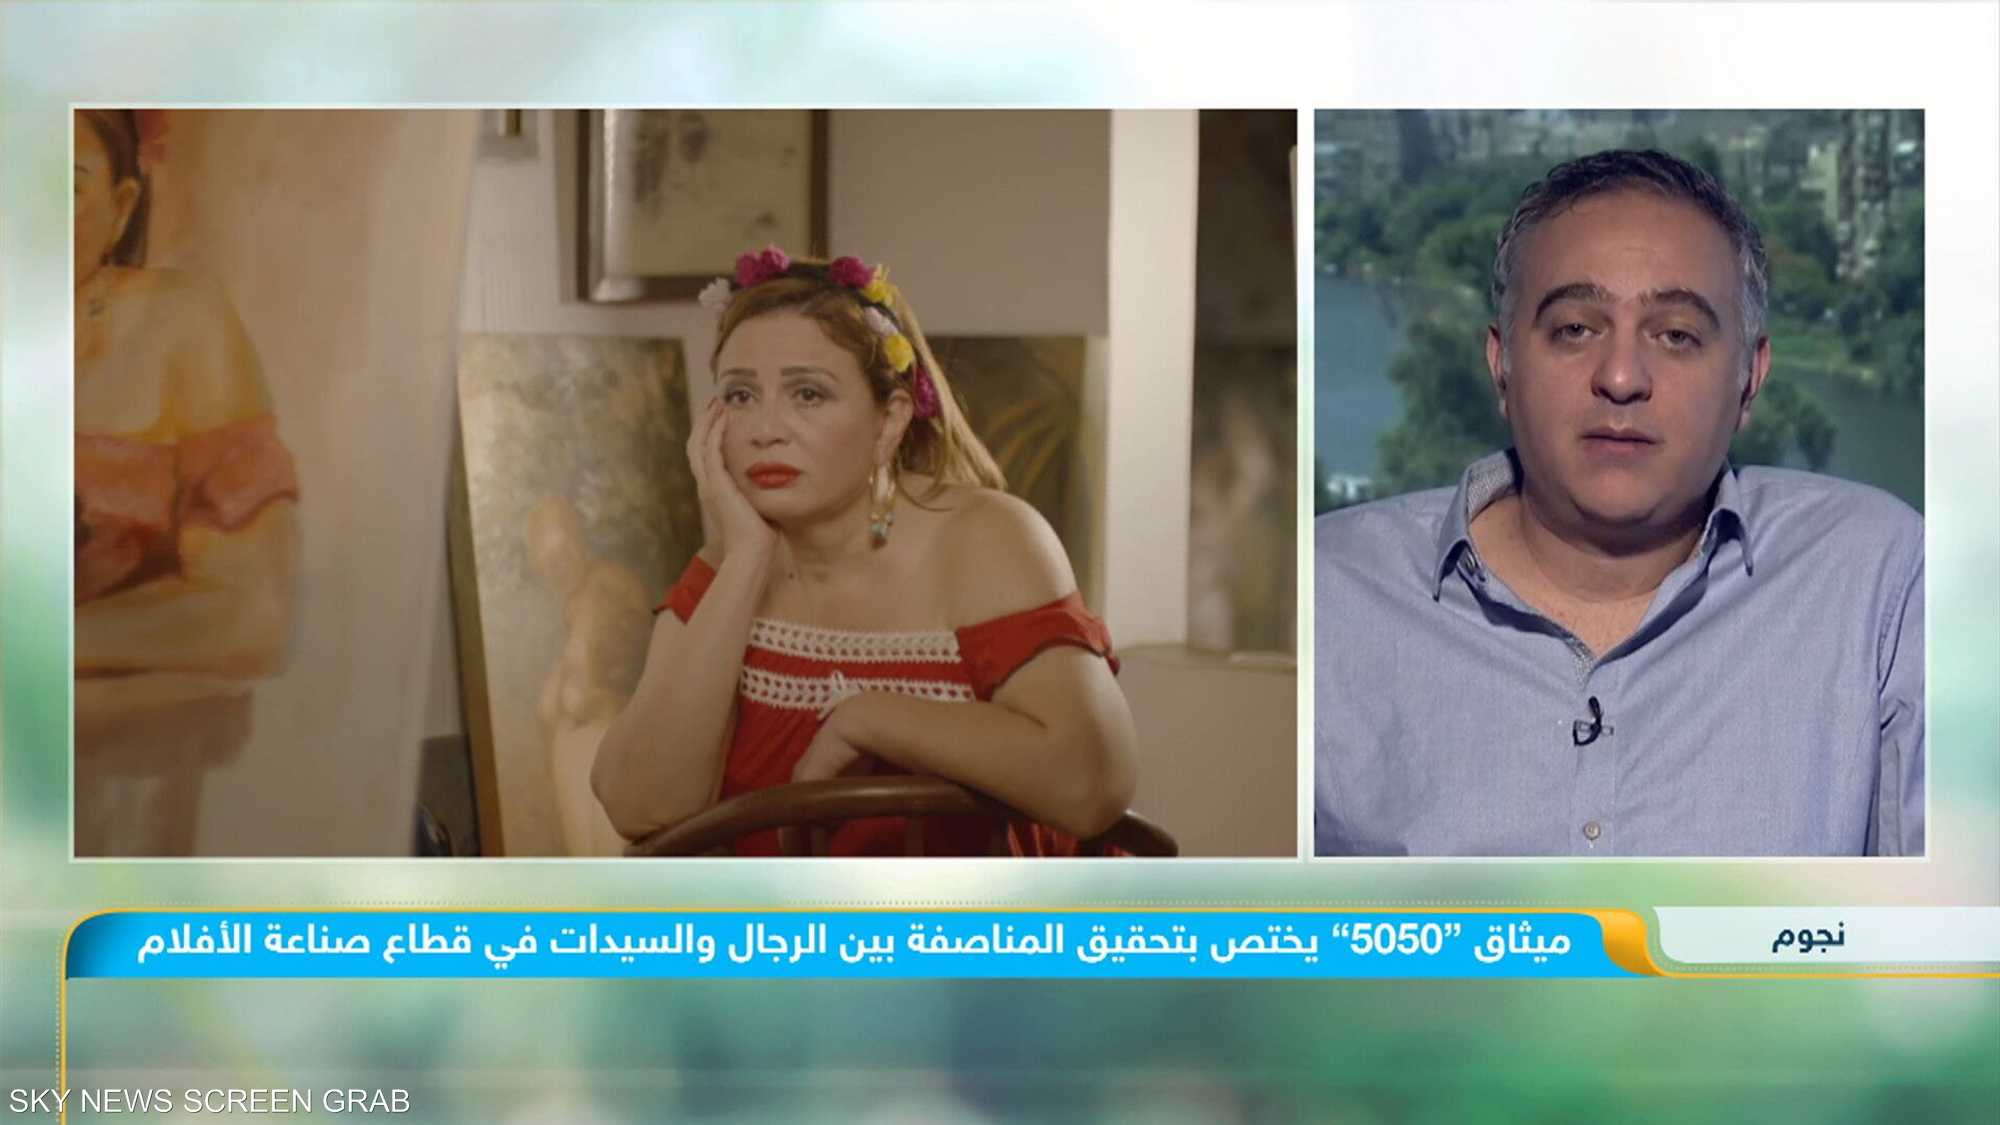 القاهرة السينمائي.. أول مهرجان عربي يوقع على ميثاق "5050"